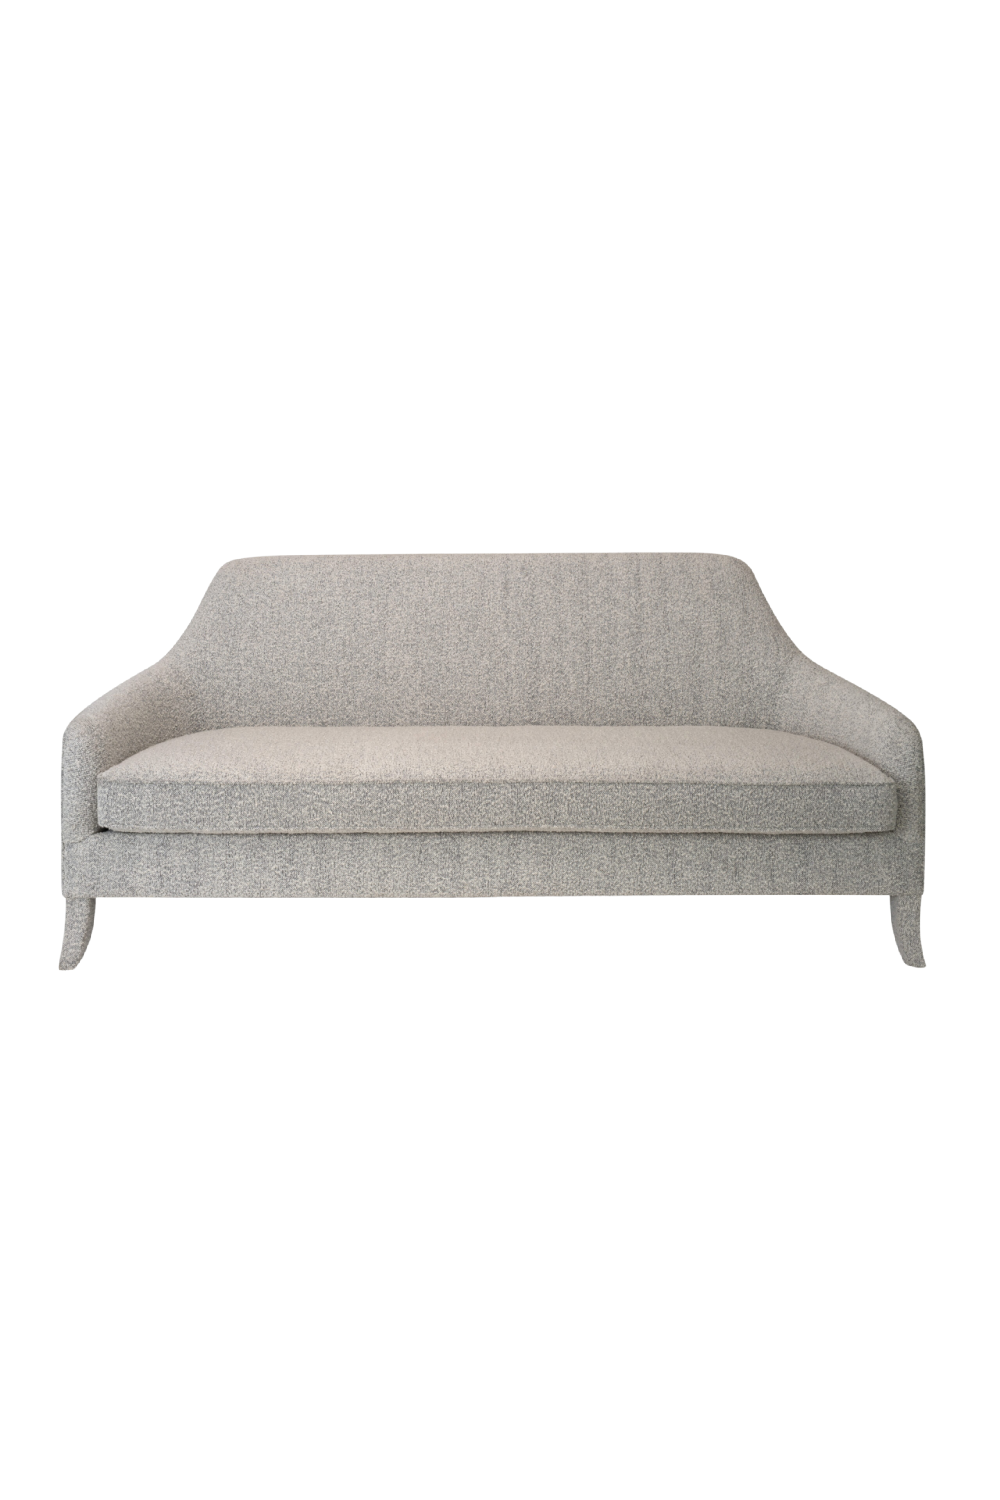 Art Deco Sofa | Liang & Eimil Tempo | Oroa.com